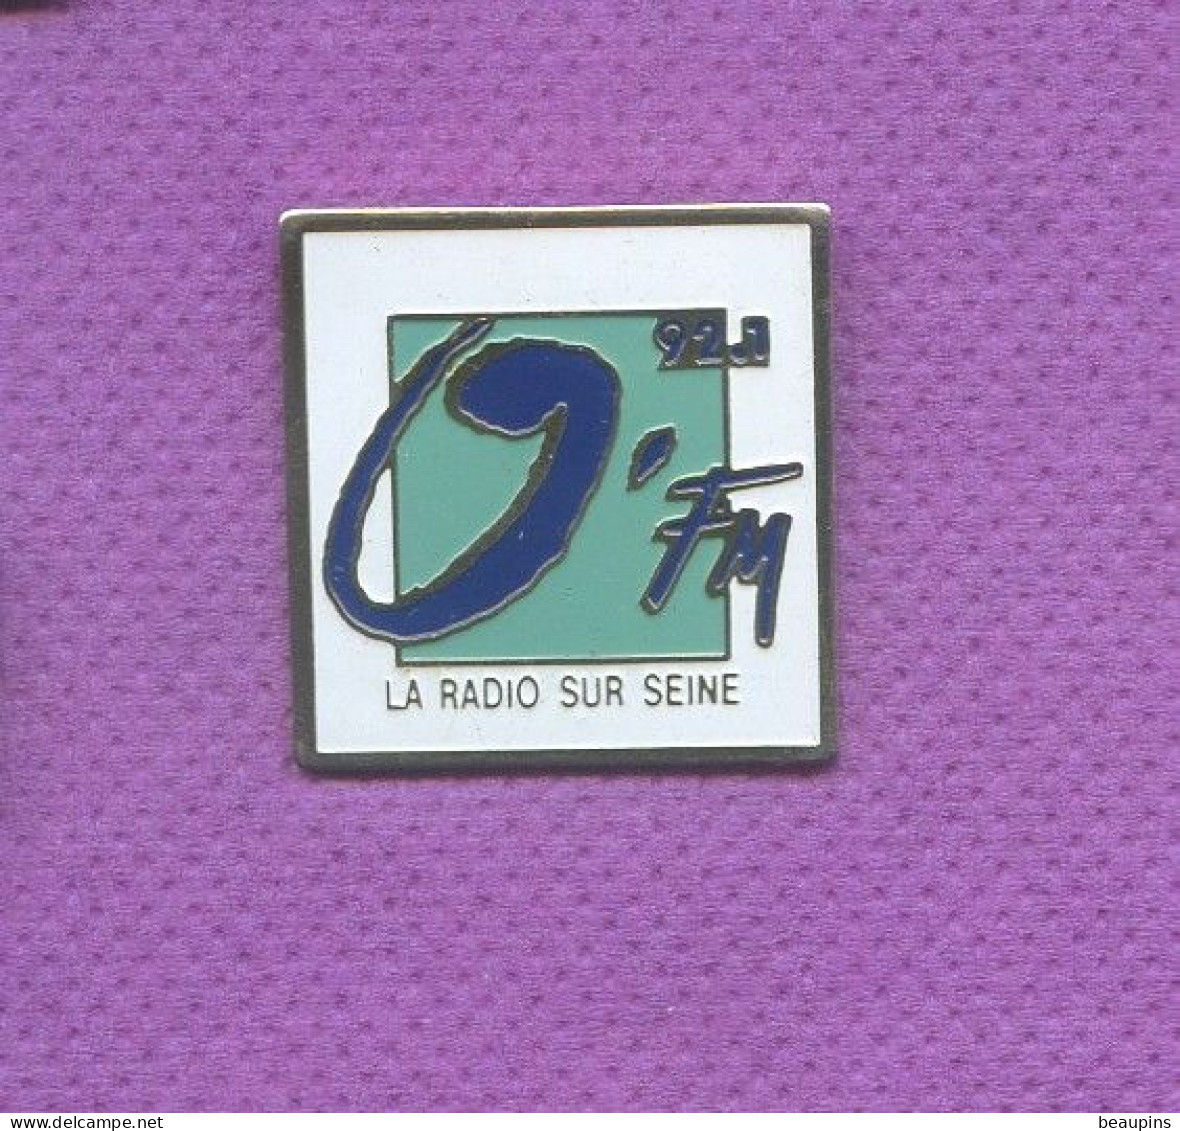 Rare Pins Media O Fm La Radio Sur Seine L148 - Medias